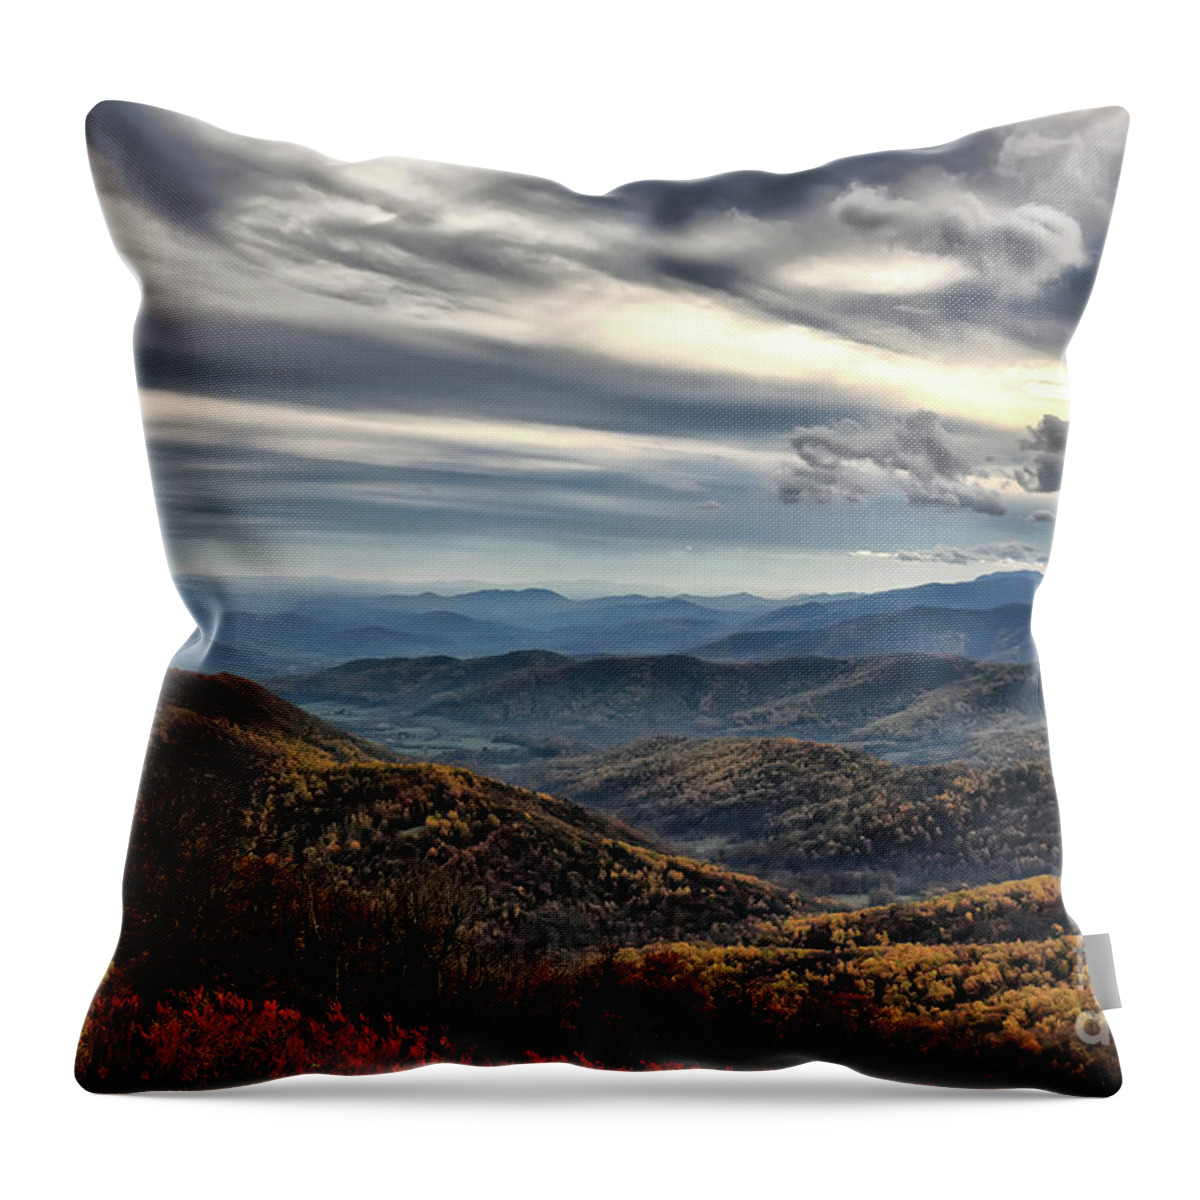 Blue Ridge Mountains Throw Pillow featuring the digital art Blue Ridge Mountains by Lois Bryan